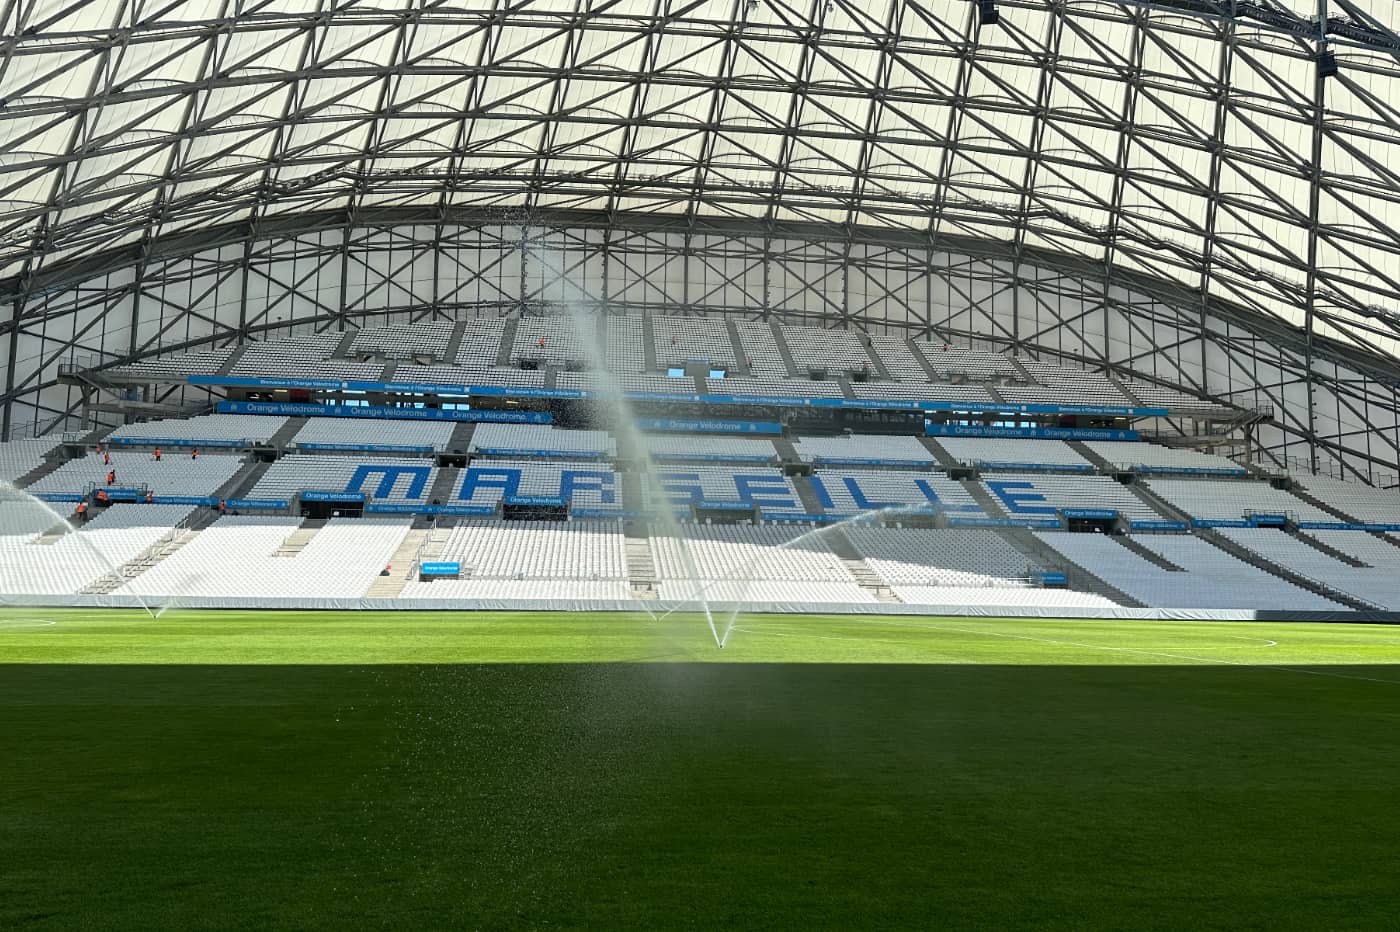 Comment le Stade Vélodrome s'est offert une première européenne pour  devenir une vitrine technologique